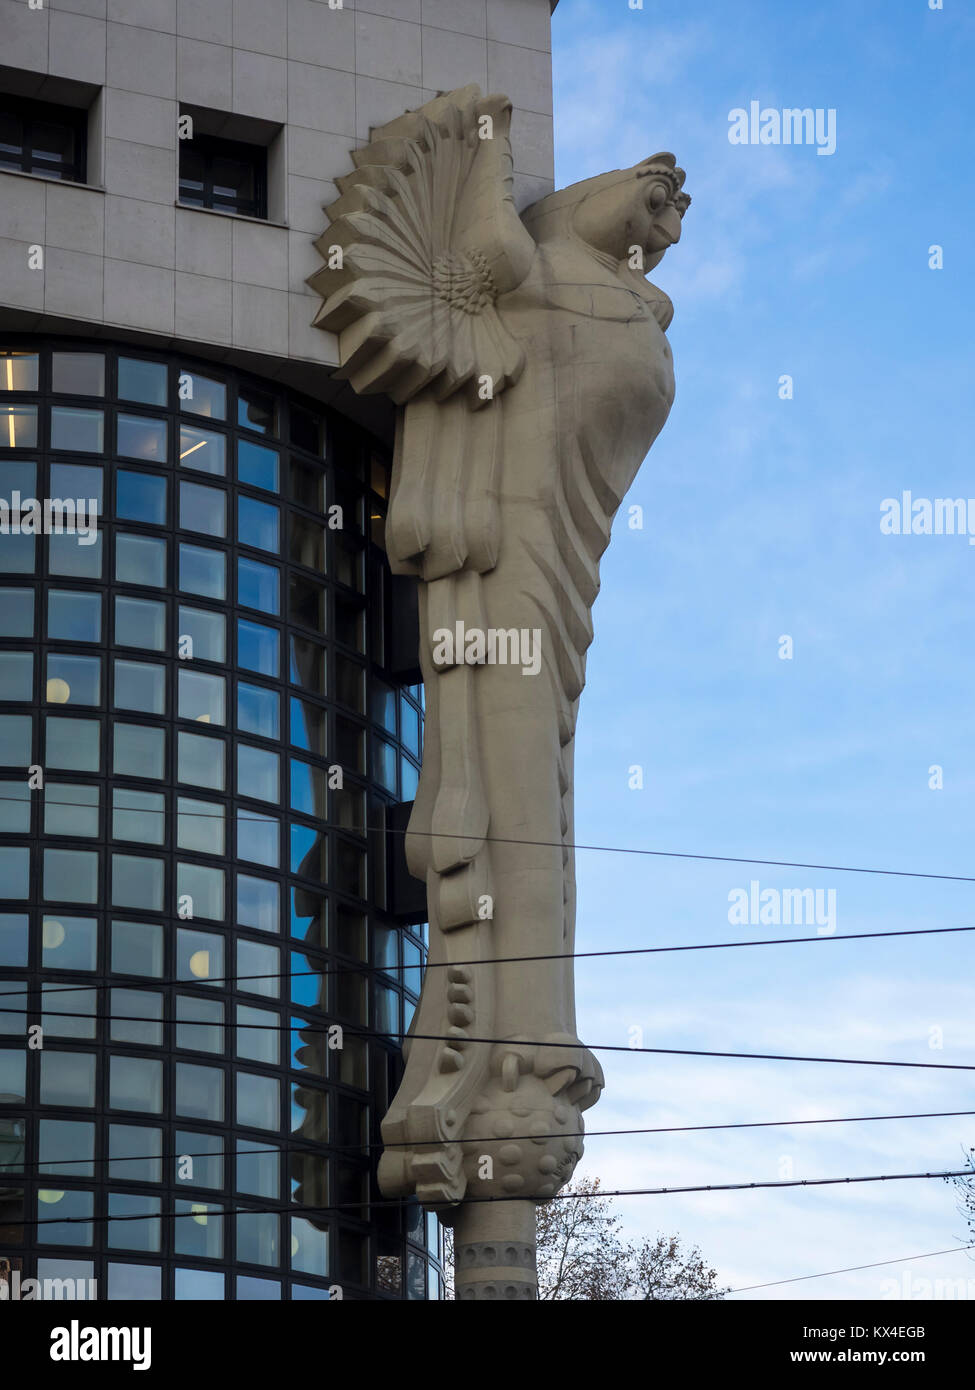 VIENA, AUSTRIA - 04 DE DICIEMBRE de 2017: Estatua de OWL en la Biblioteca Universitaria Universidad de Tecnología de Viena (Technische Universität Wien Hauptbibliothek) Foto de stock